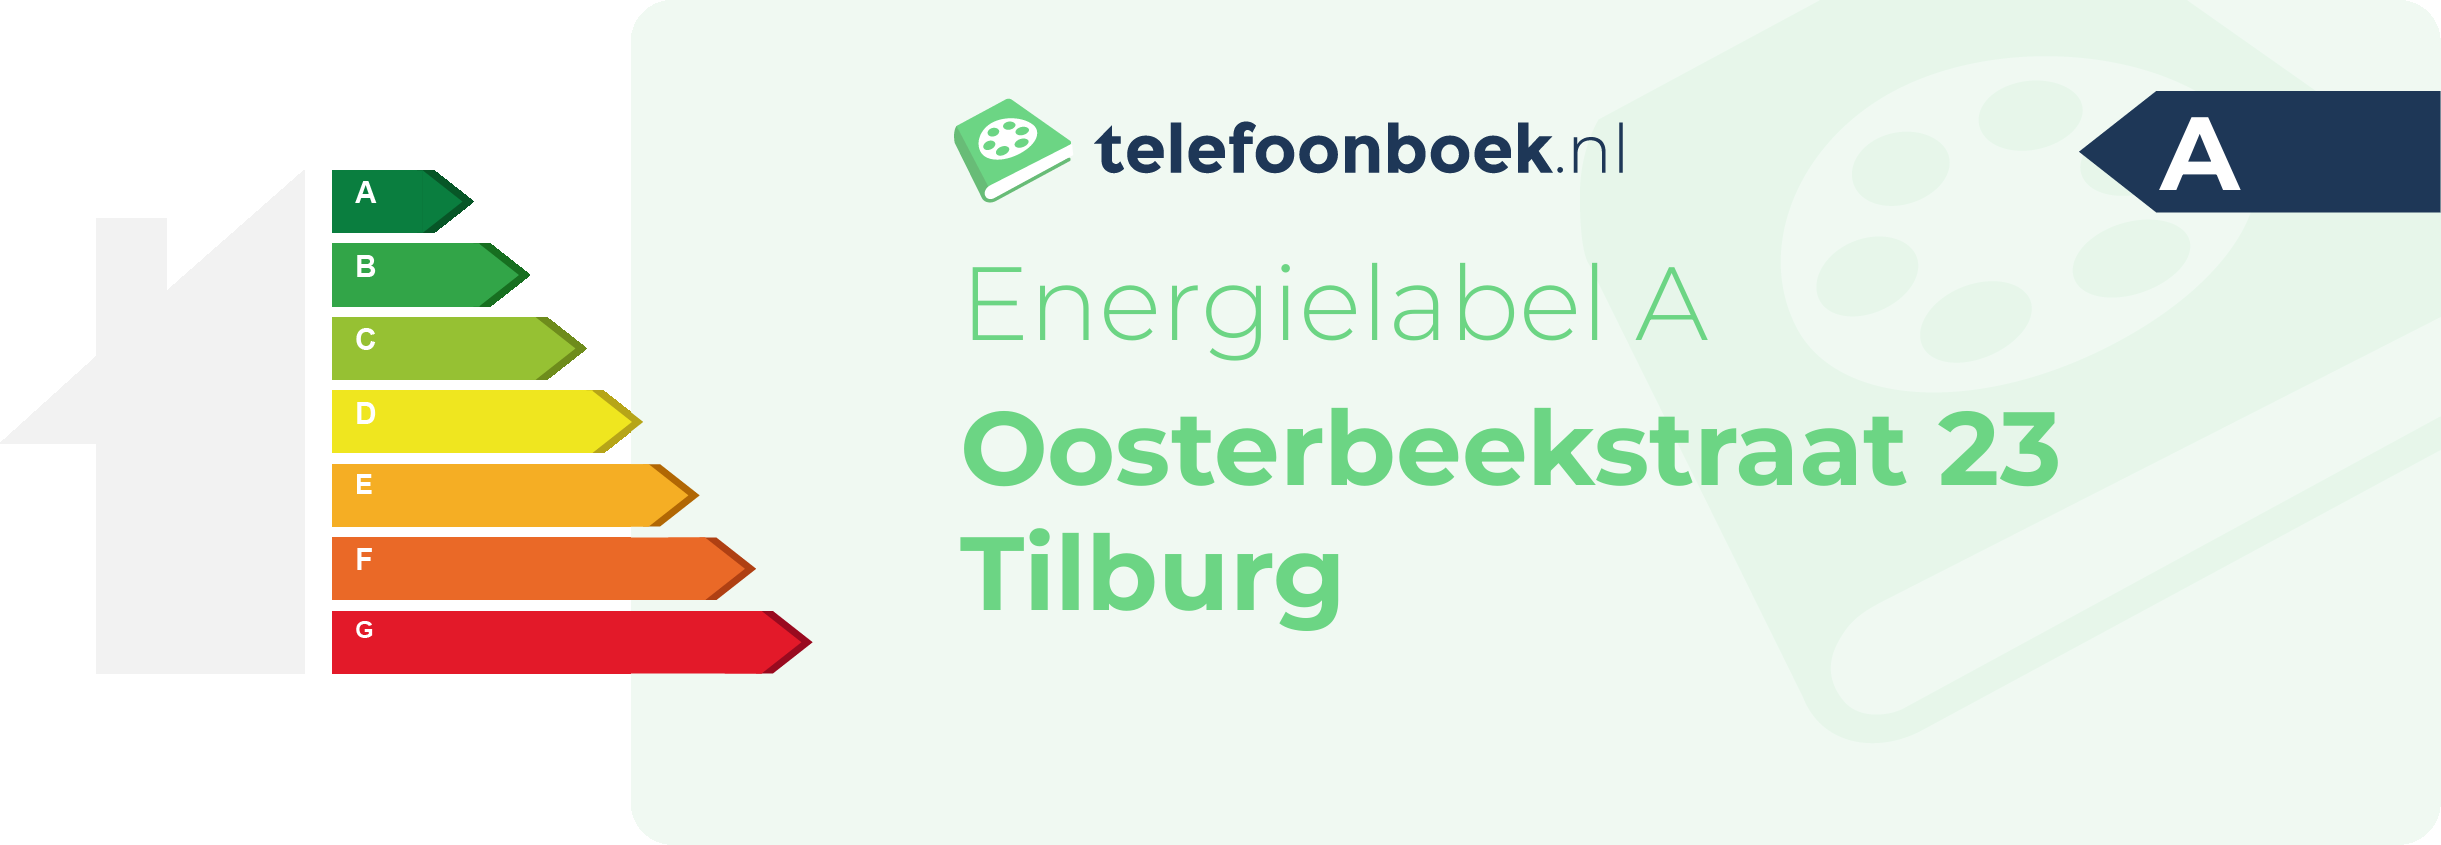 Energielabel Oosterbeekstraat 23 Tilburg